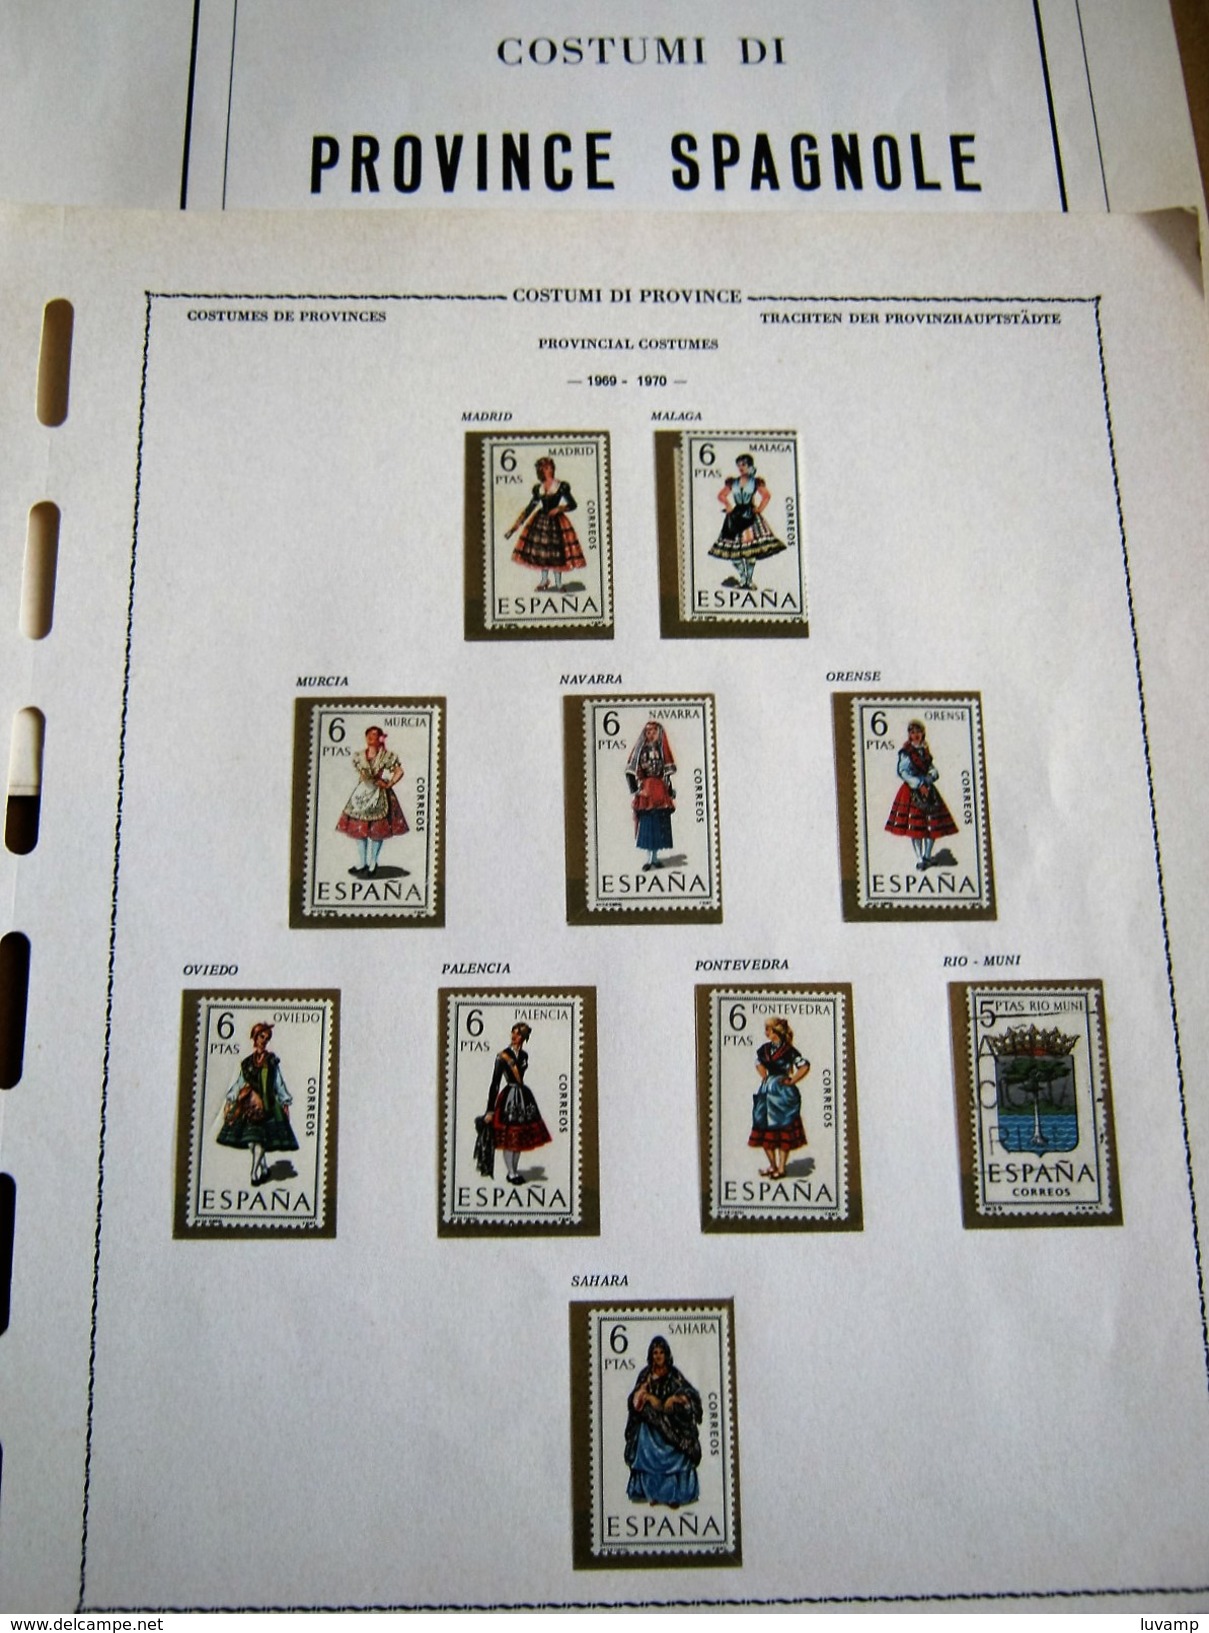 6 FOGLI EURALBO FRANCOB.COSTUMI DELLE PROVINCE SPAGNOLE (200916) - Unused Stamps